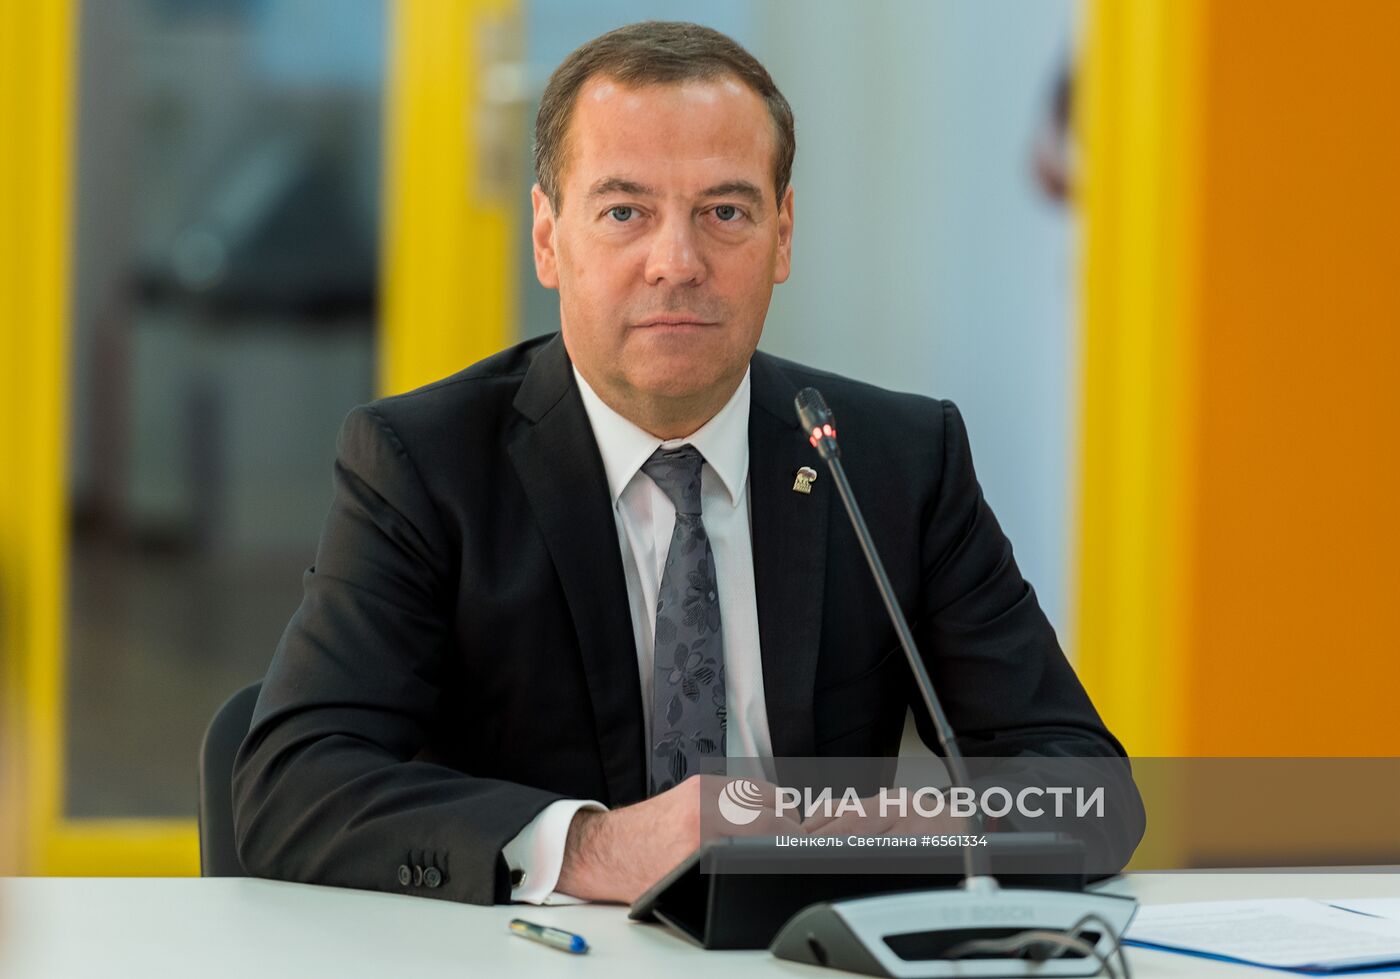 Зампред Совбеза РФ, председатель "Единой России" Д. Медведев принял участие в форуме "Большой семейный совет"